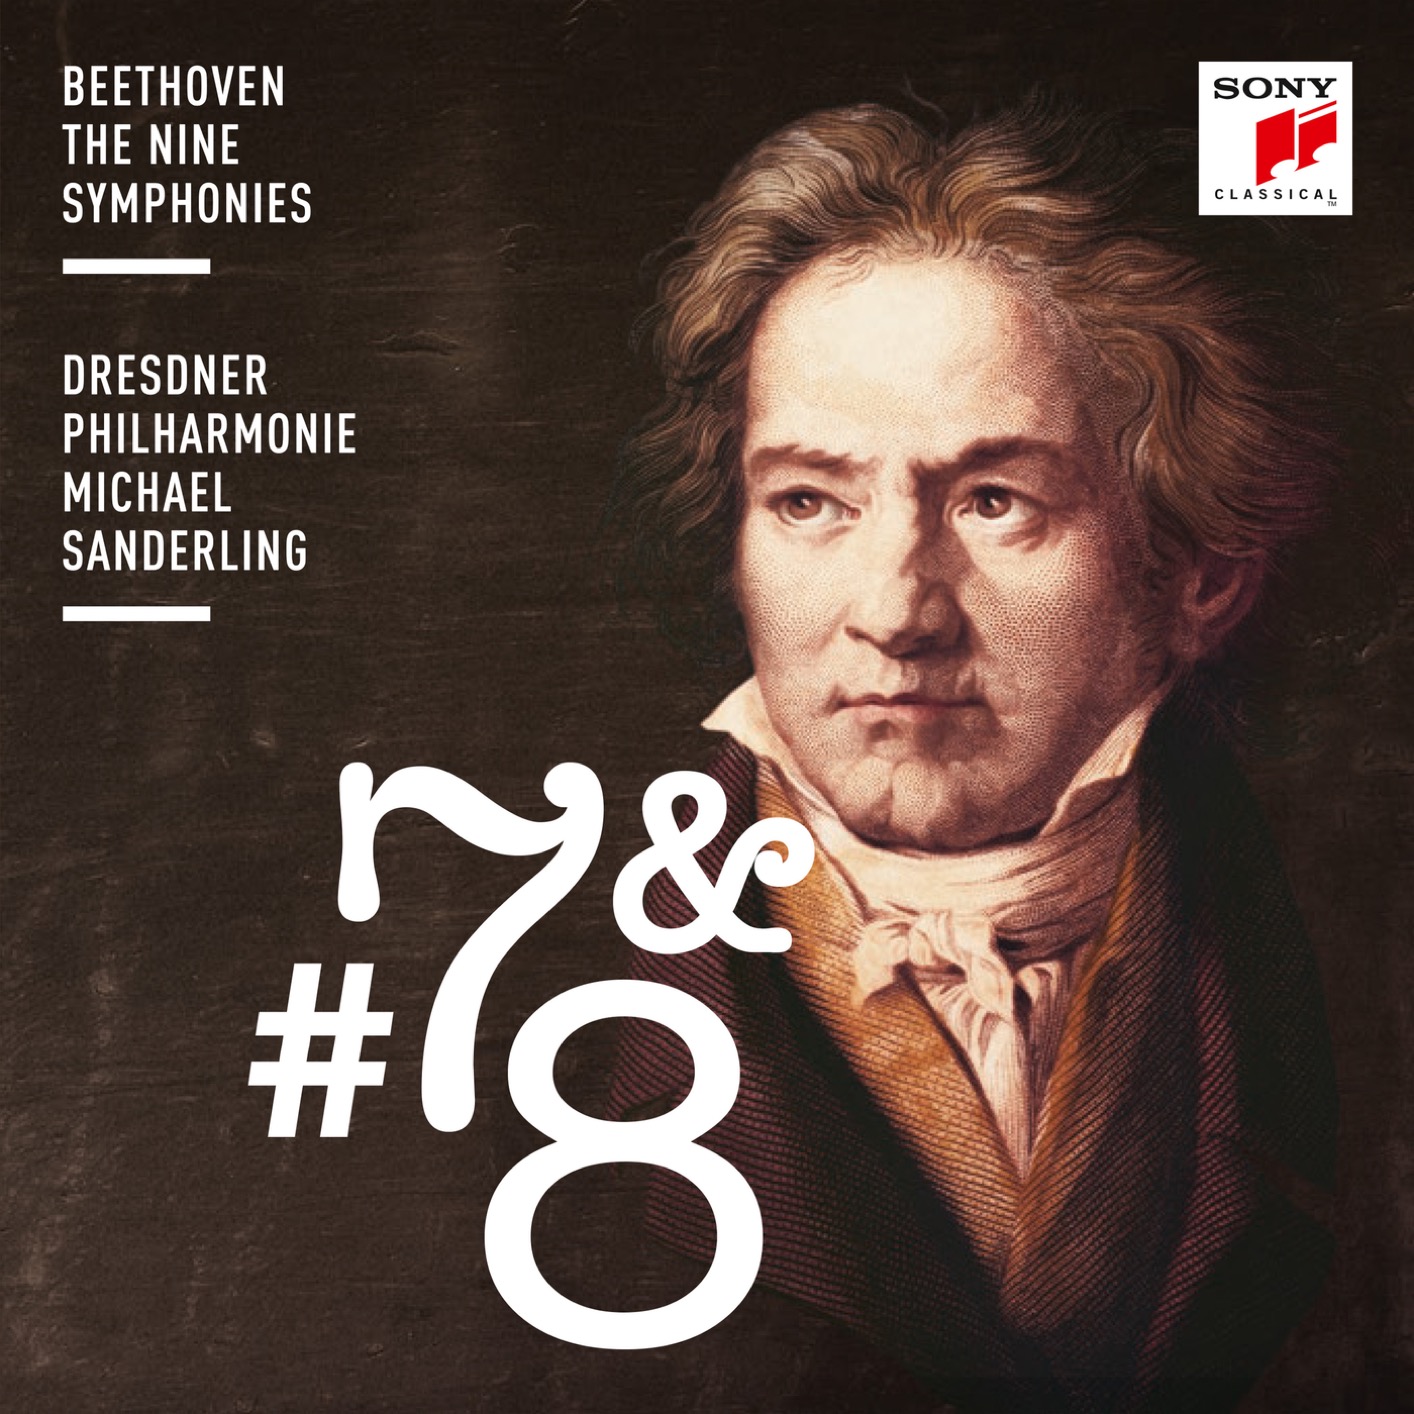 Dresdner Philharmonie & Michael Sanderling - Beethoven: Symphonies Nos. 7 & 8 (2018) [FLAC 24bit/96kHz]